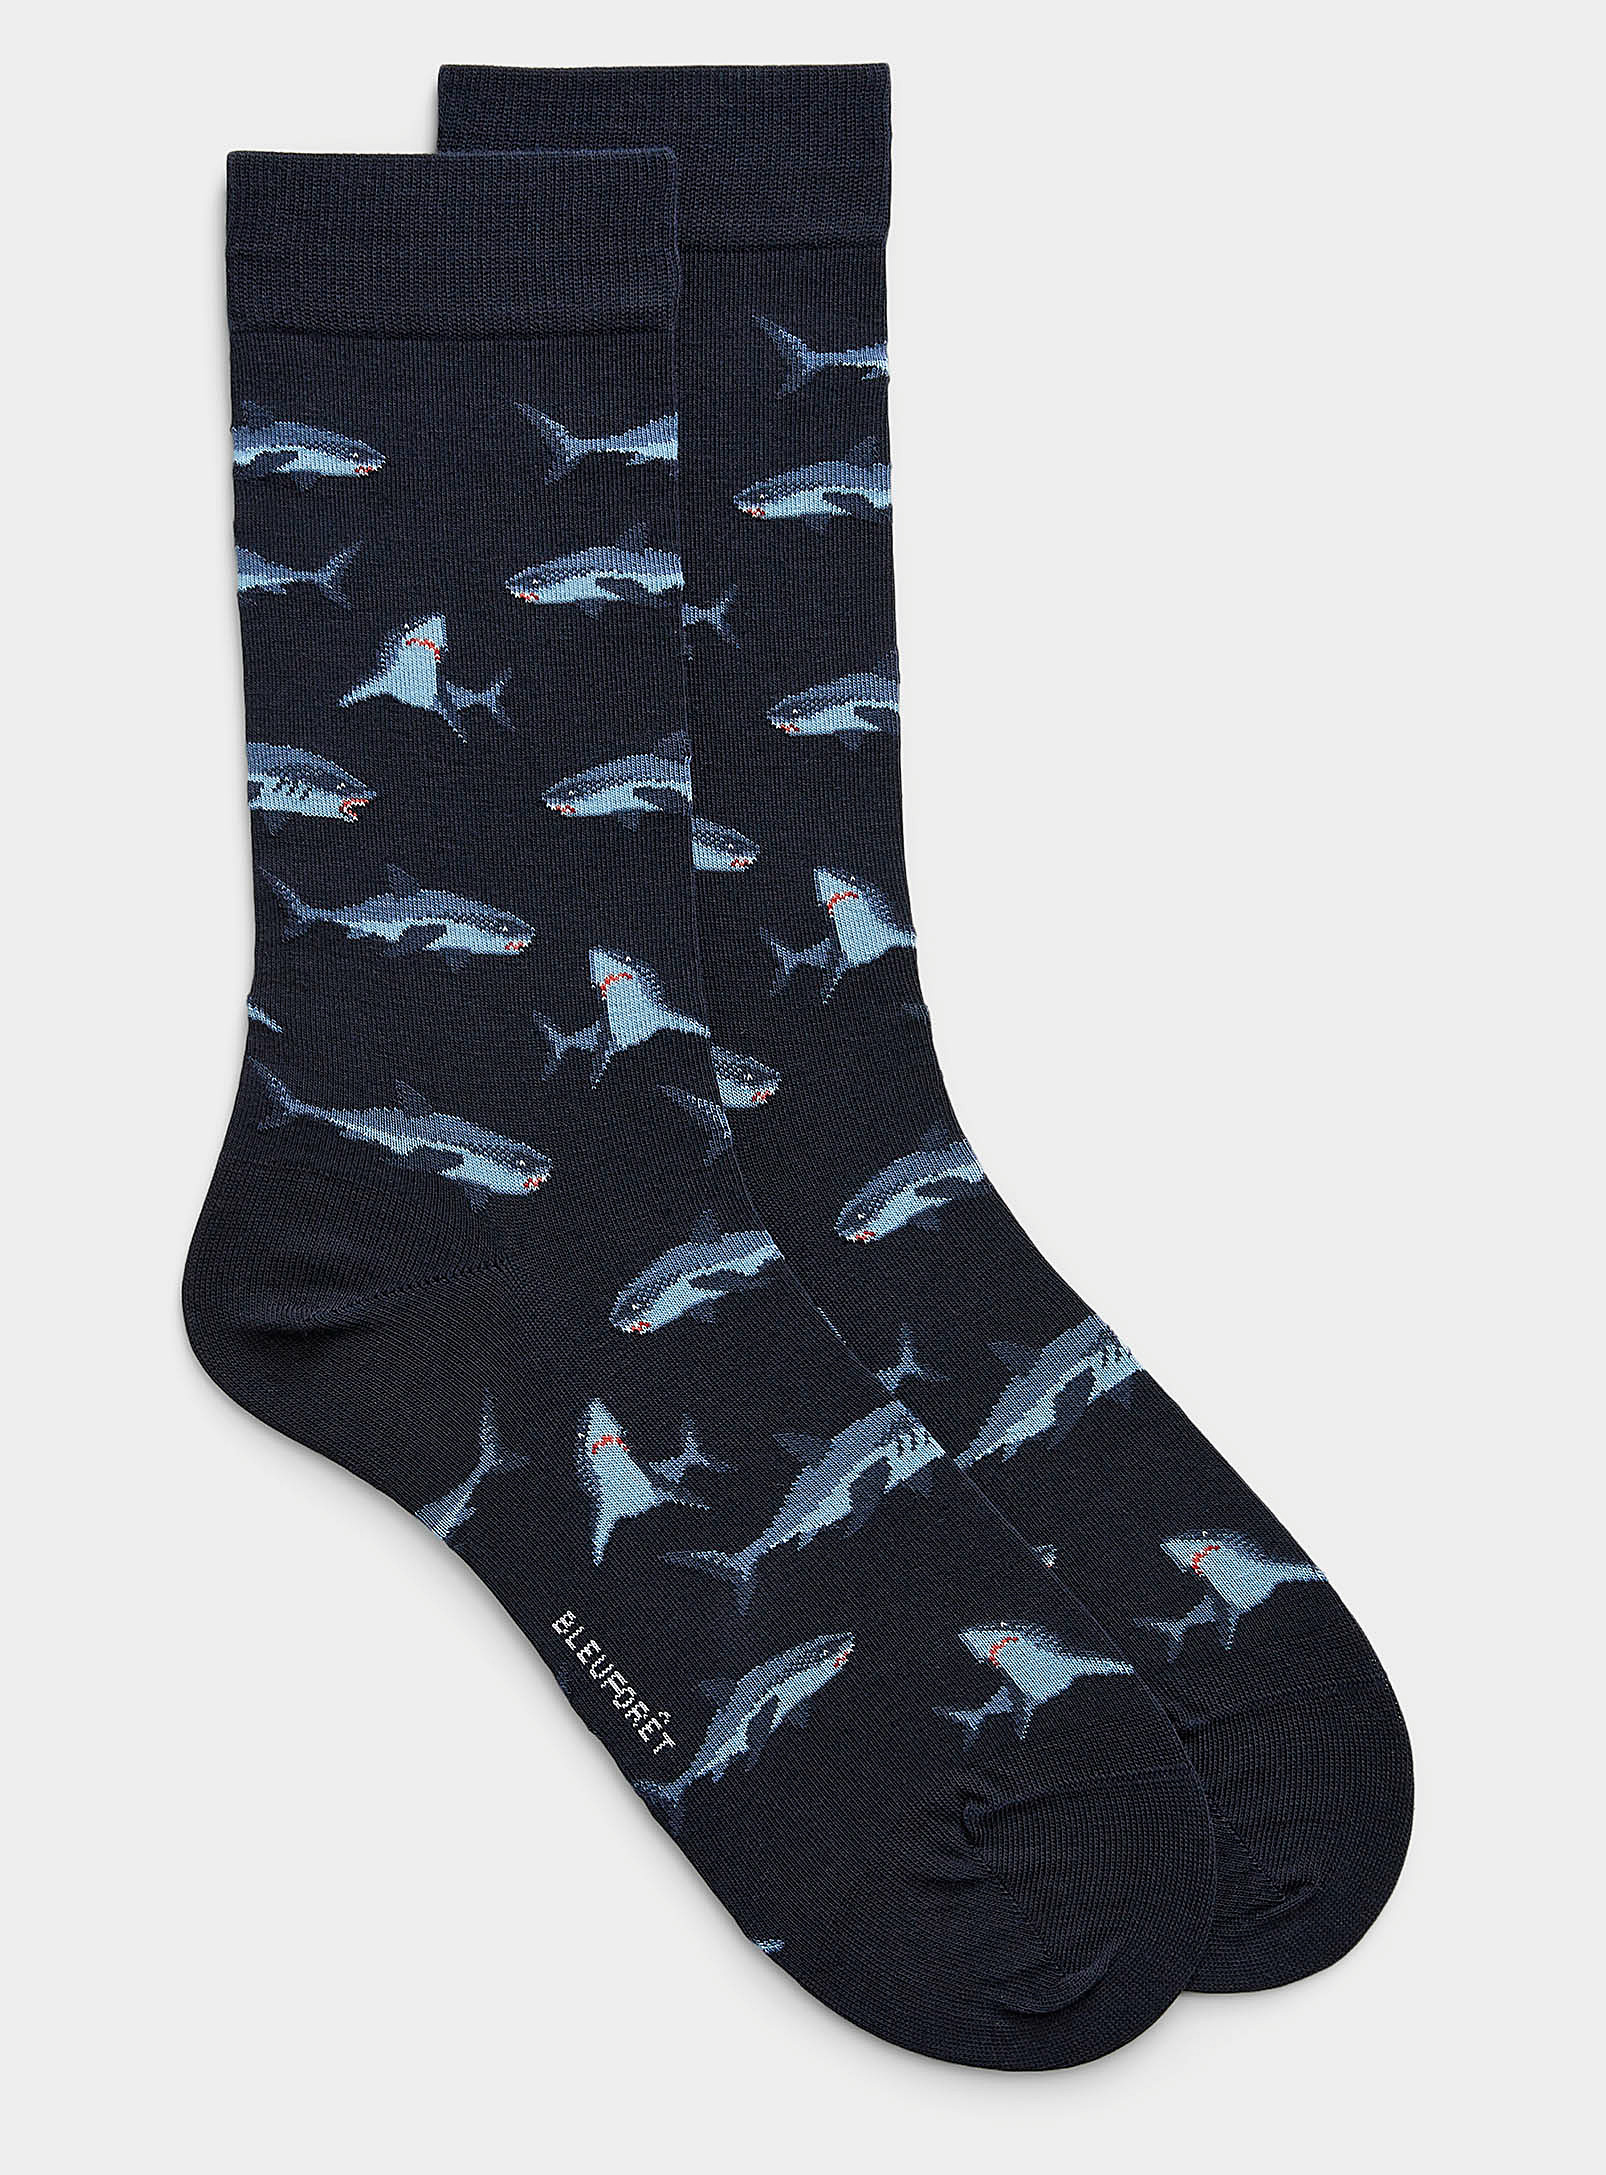 Bleuforêt Shark Sock In Patterned Blue